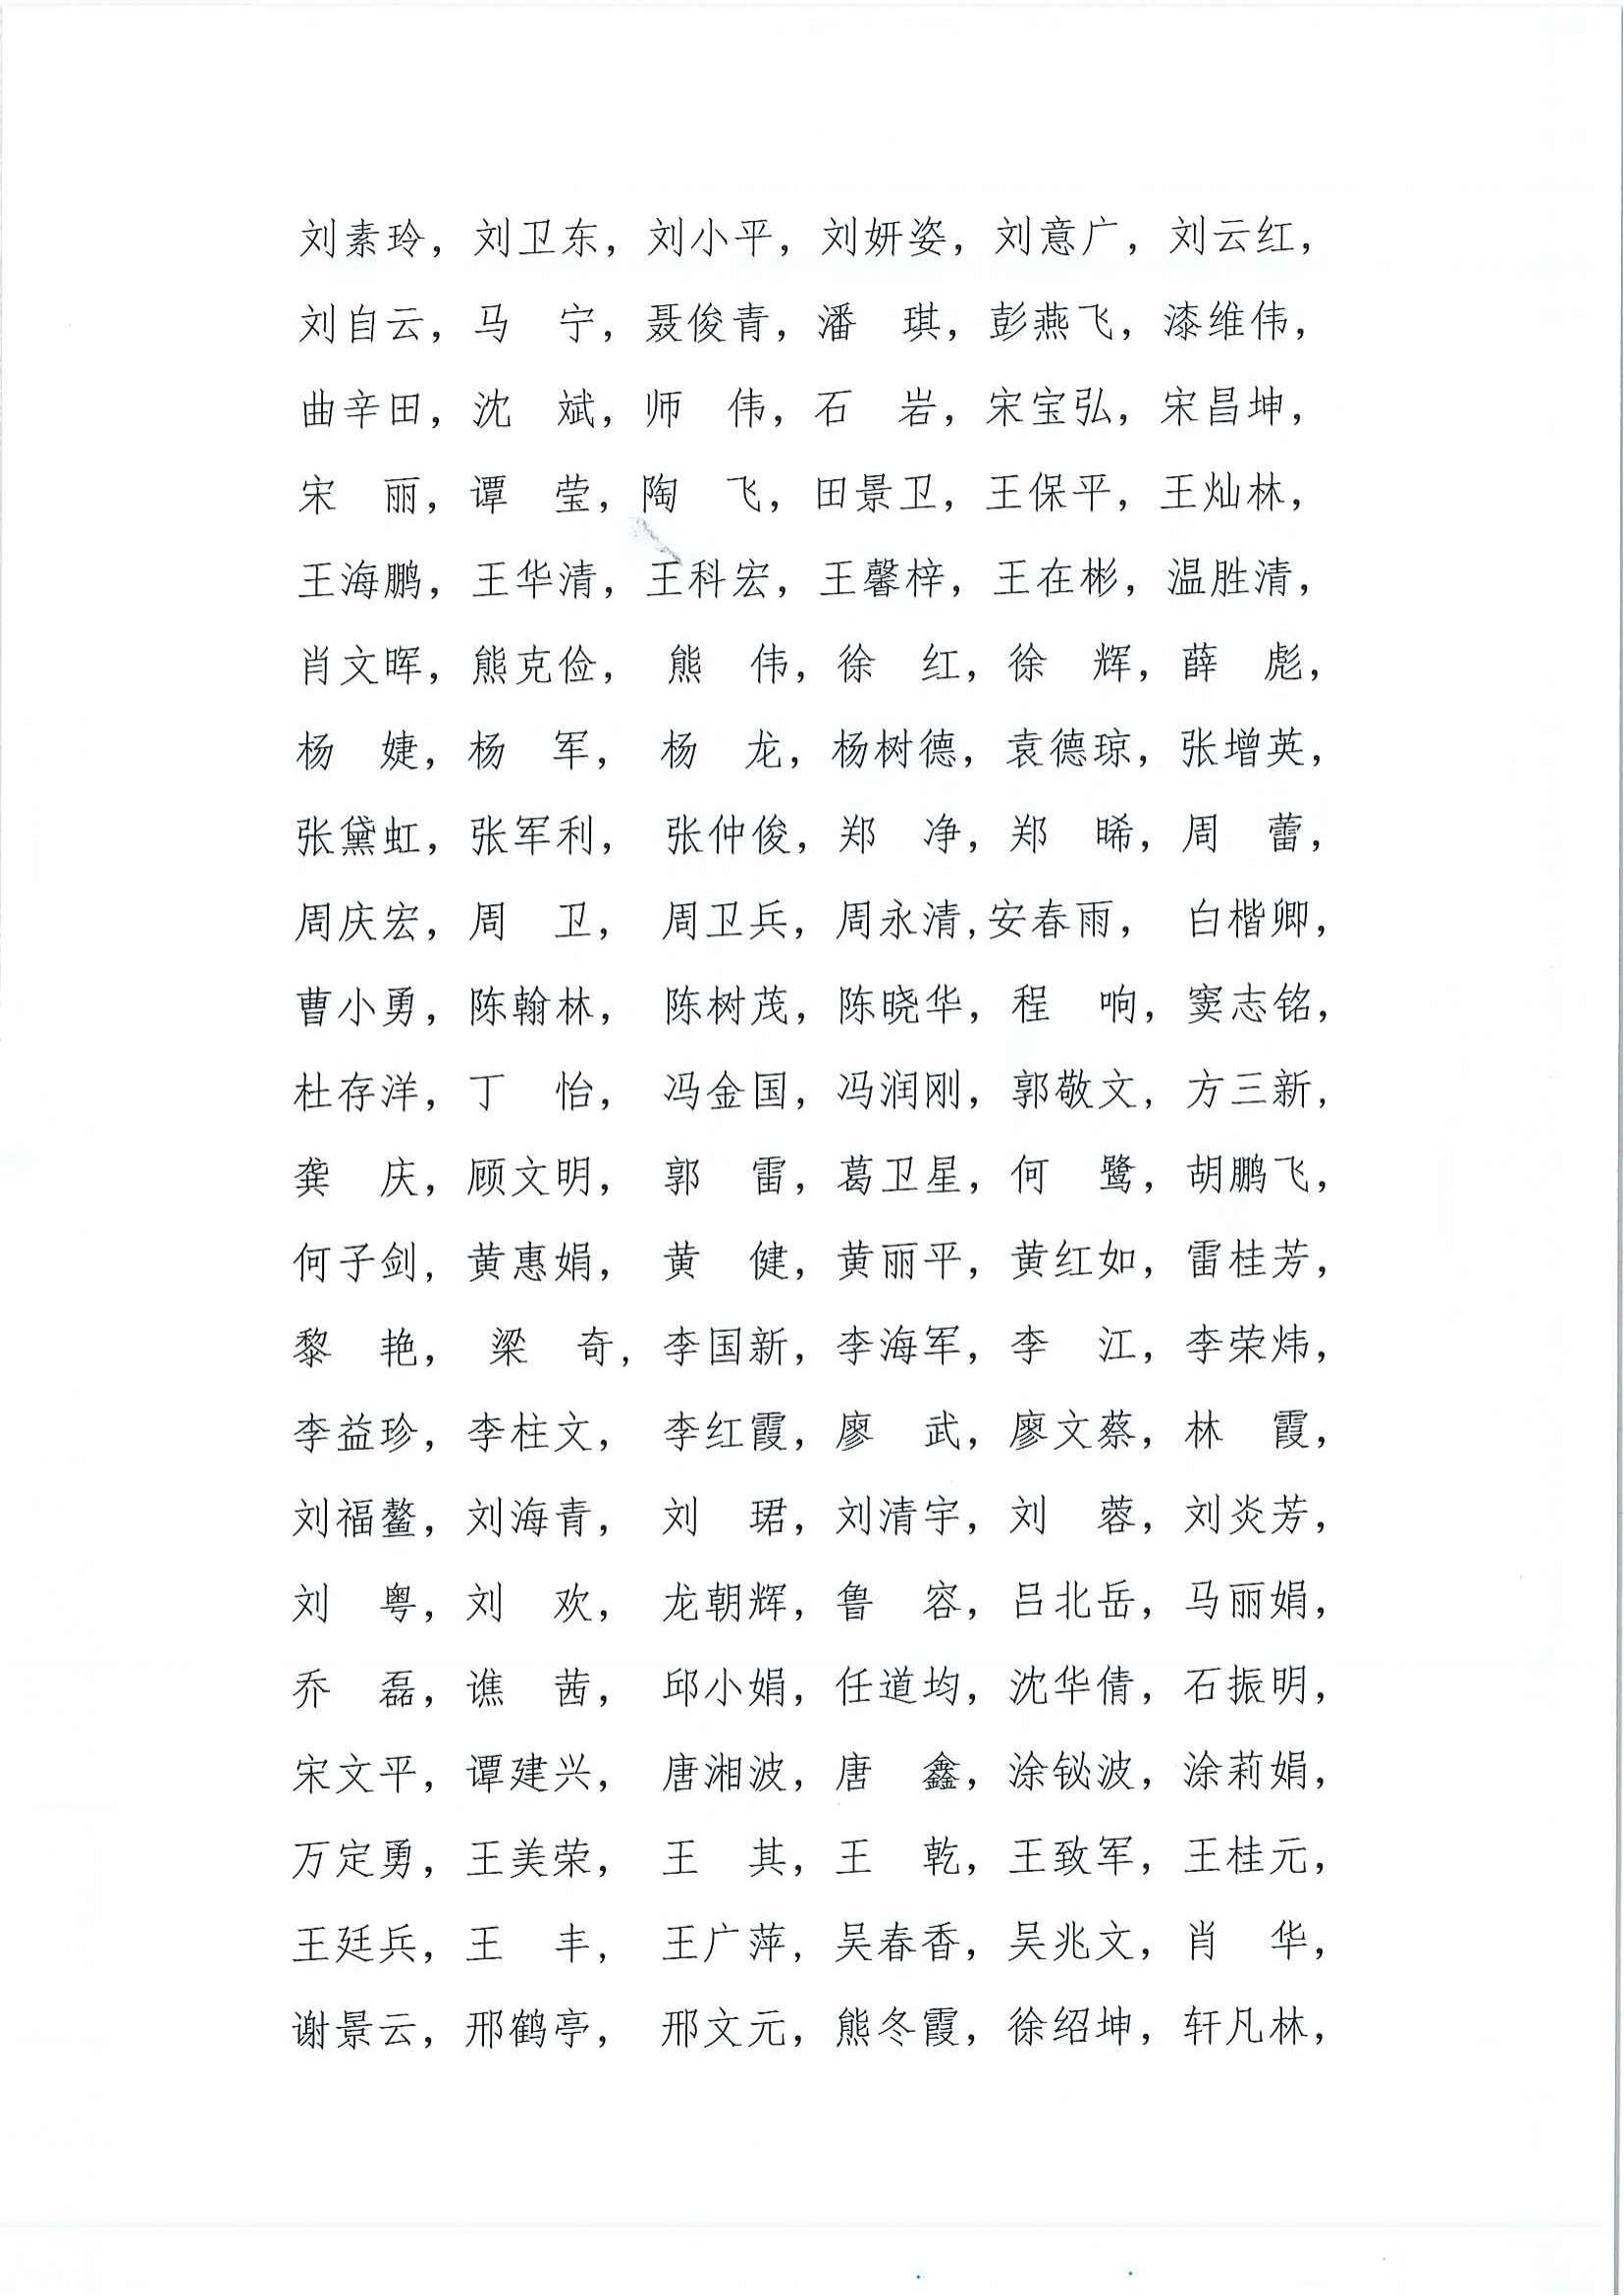 关于 2023年度深圳市市长质量奖评审员考试结果的通知